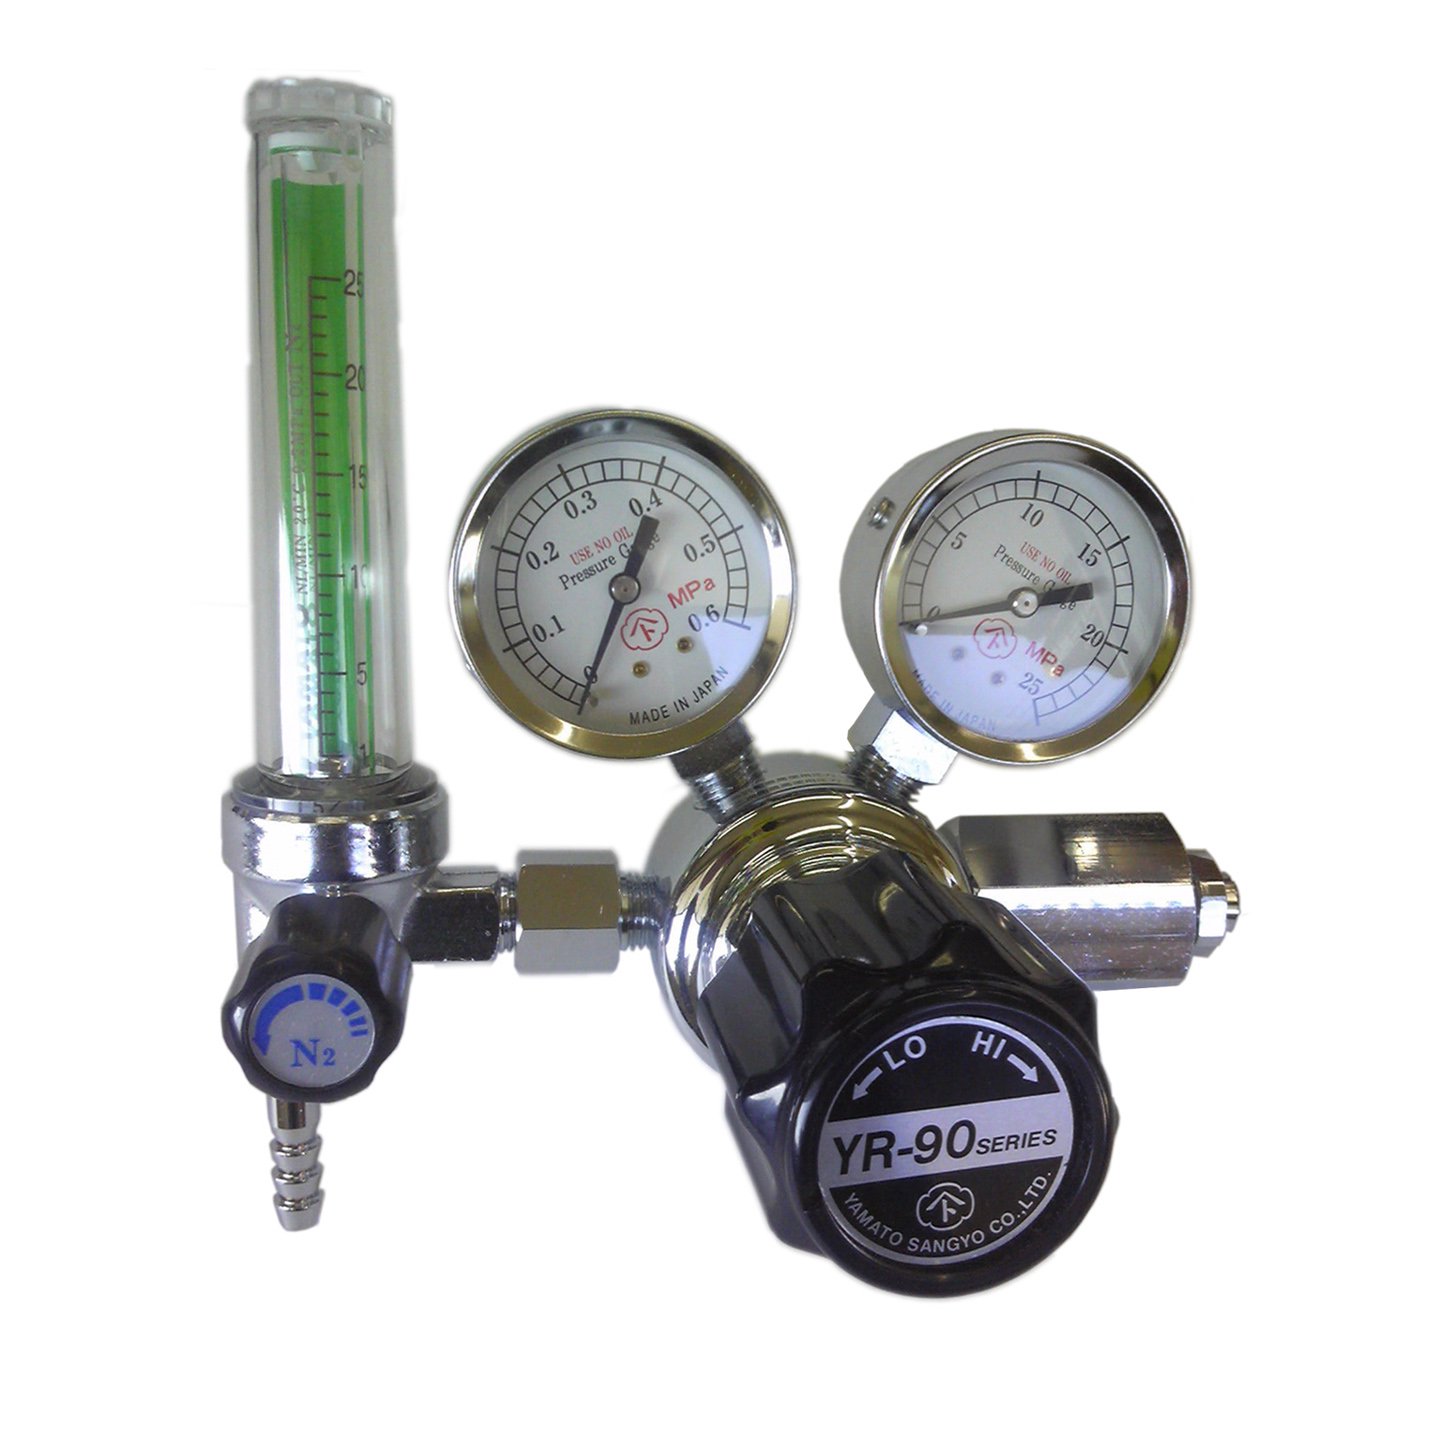 窒素（N2）流量計付き可変式圧力調整器（減圧器） - ヘリウムガス、風船用品専門ショップ